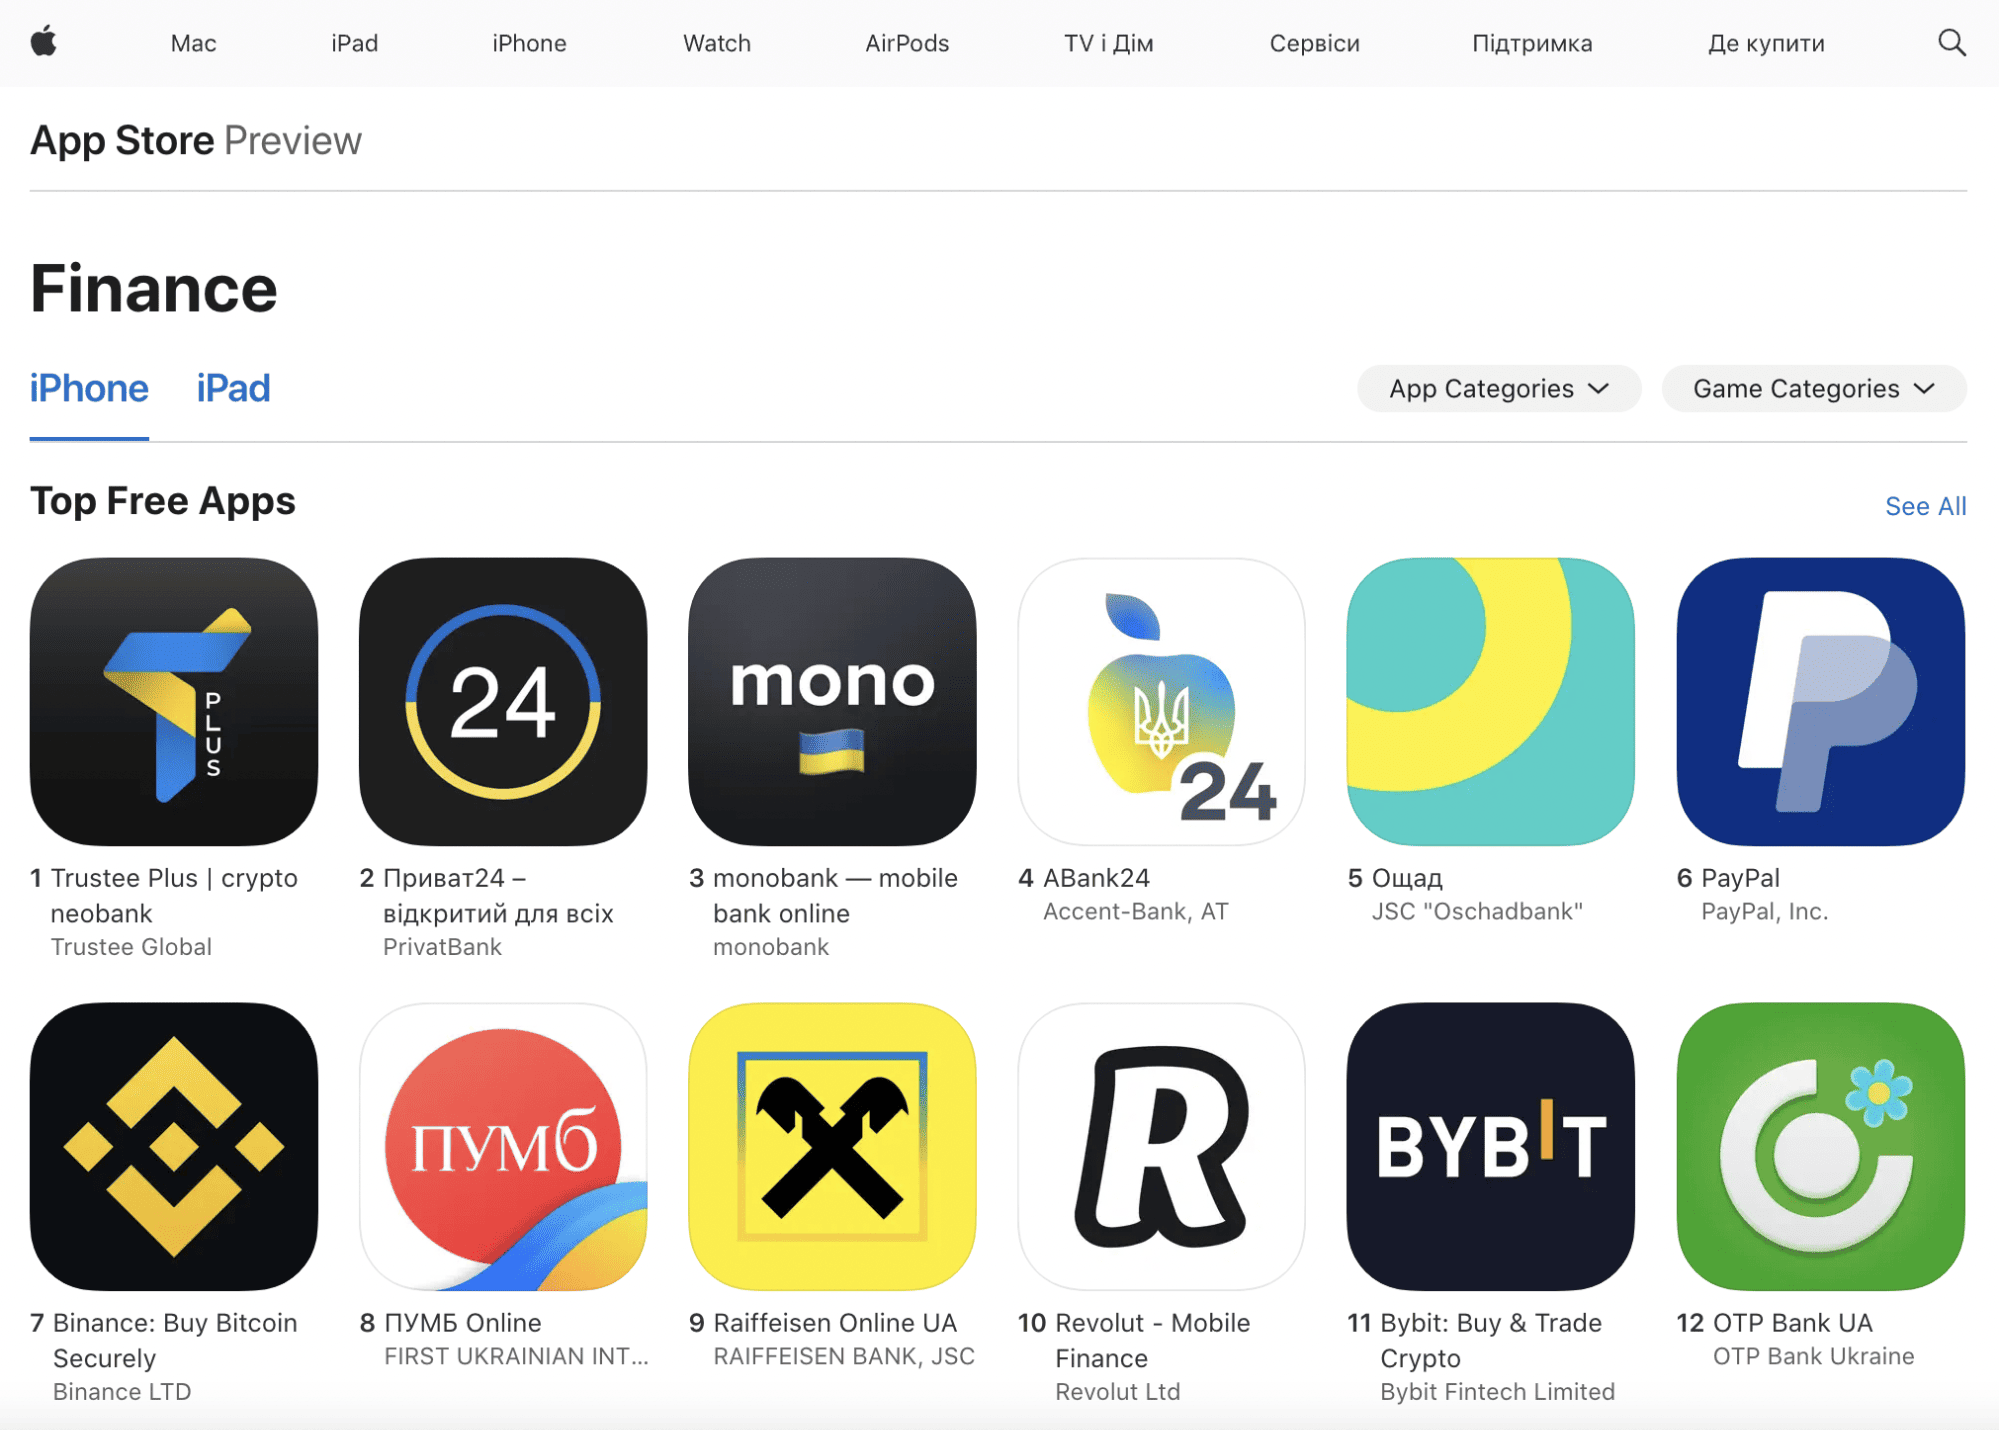 Криптоприложение Trustee Plus заняло первое место в украинском App Store в разделе "Финансы"